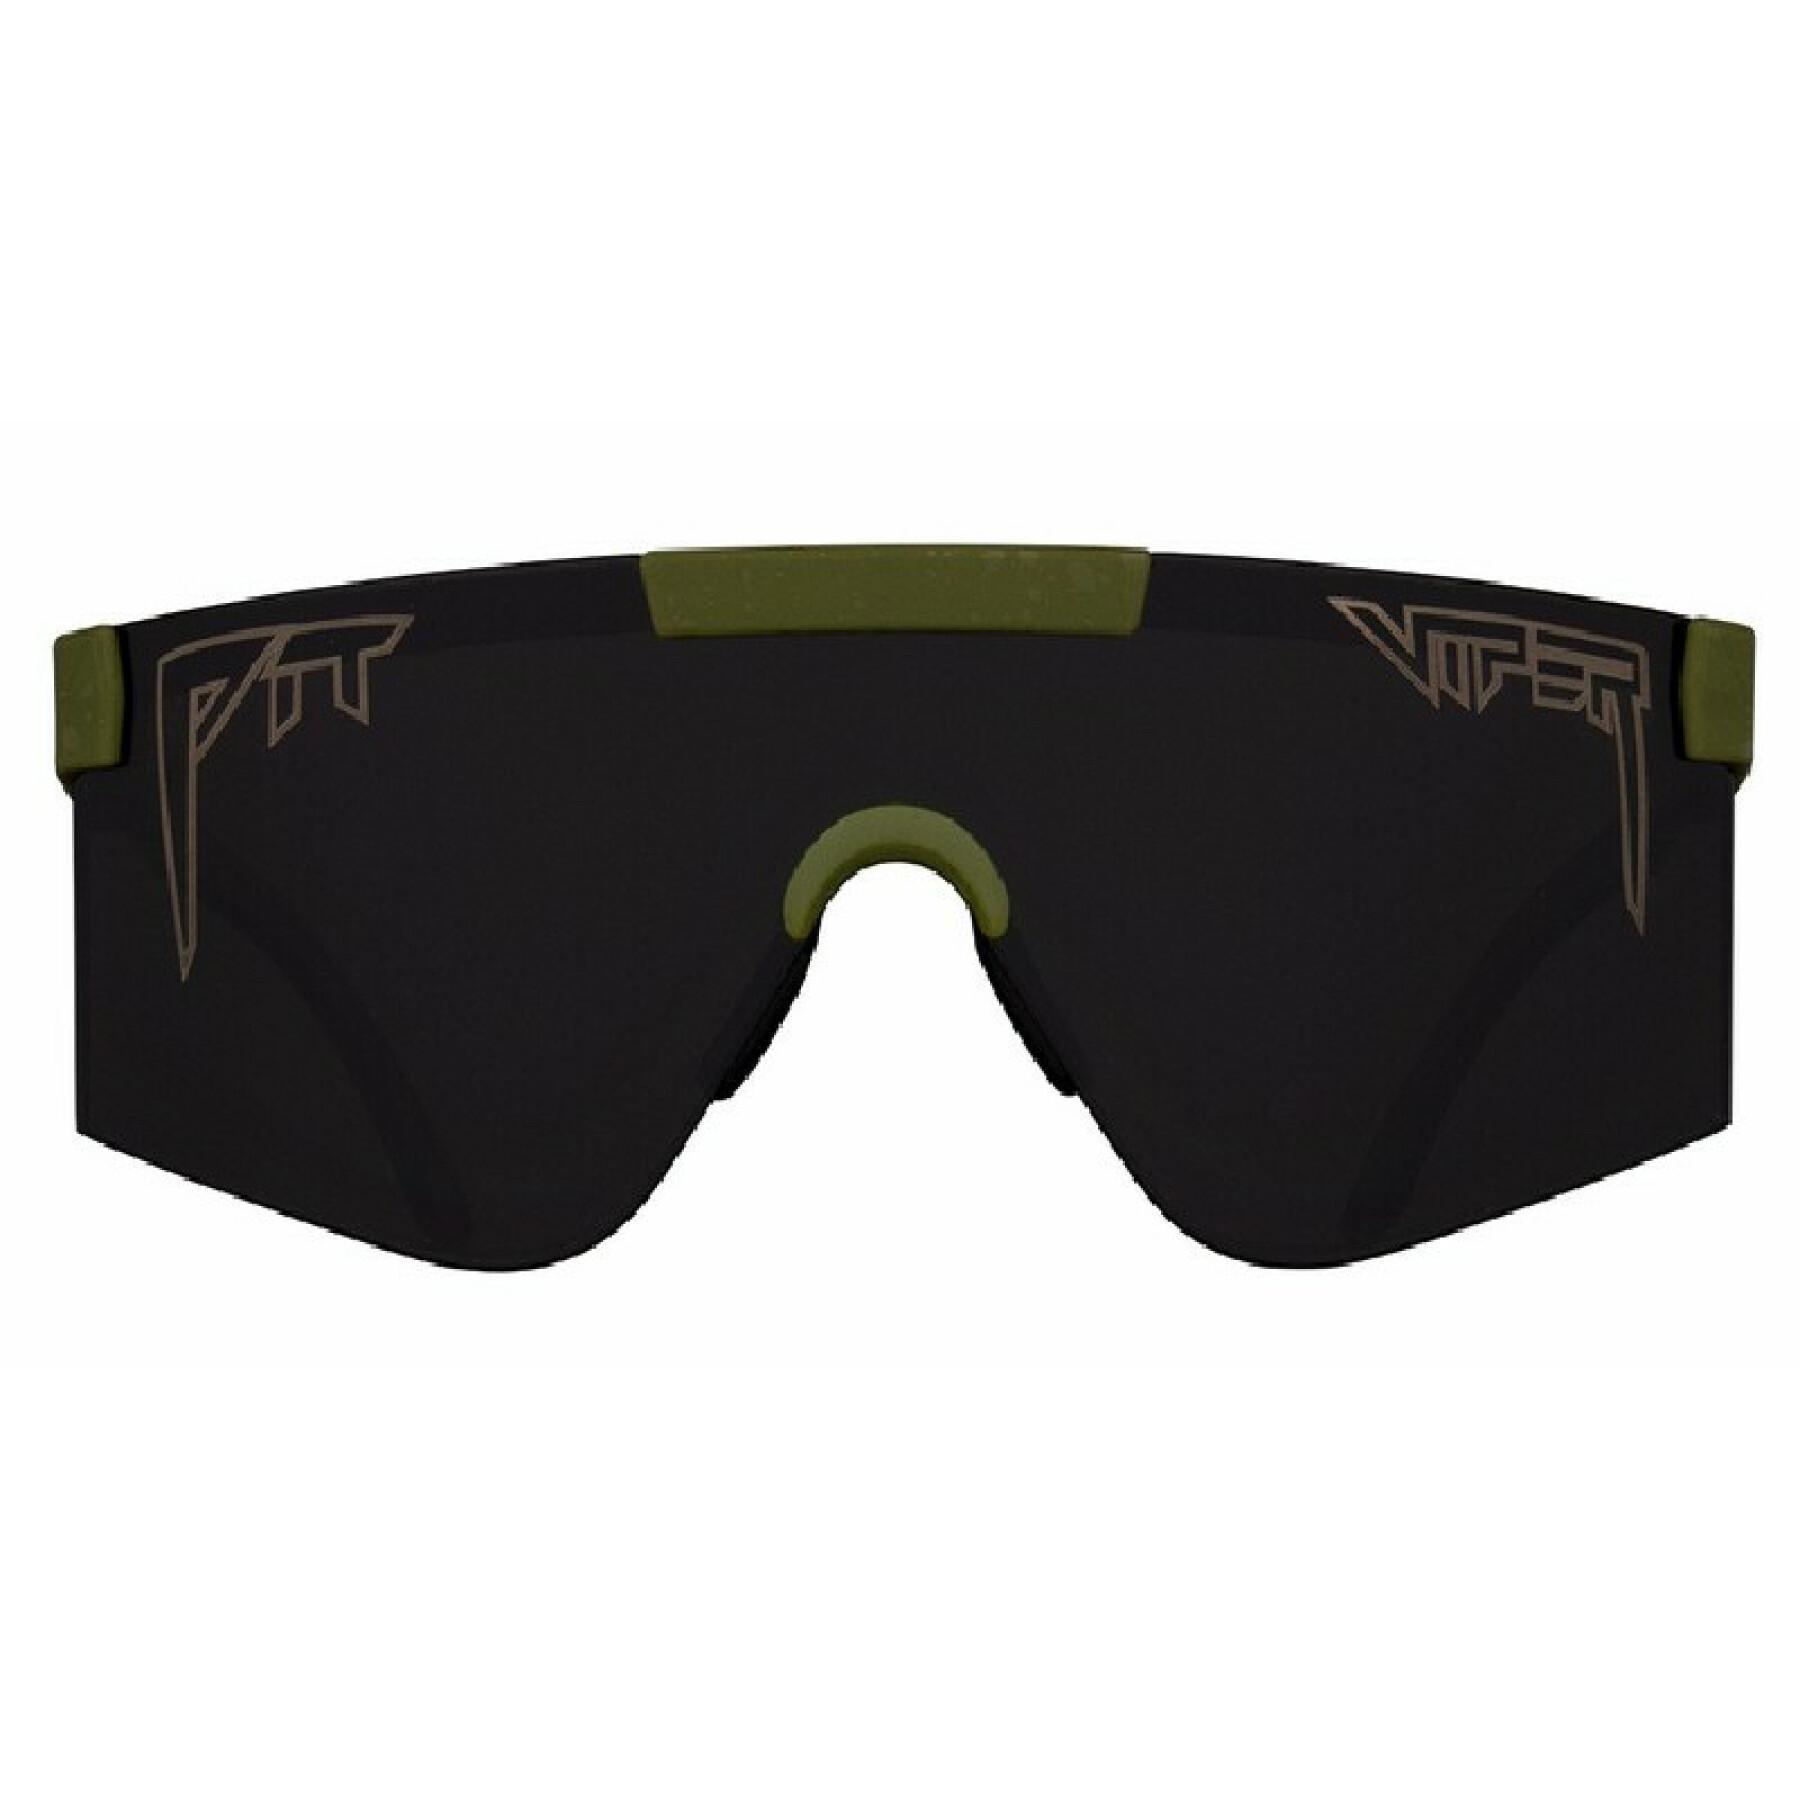 Óculos de sol Pit Viper The NJP 2000 mil-spec